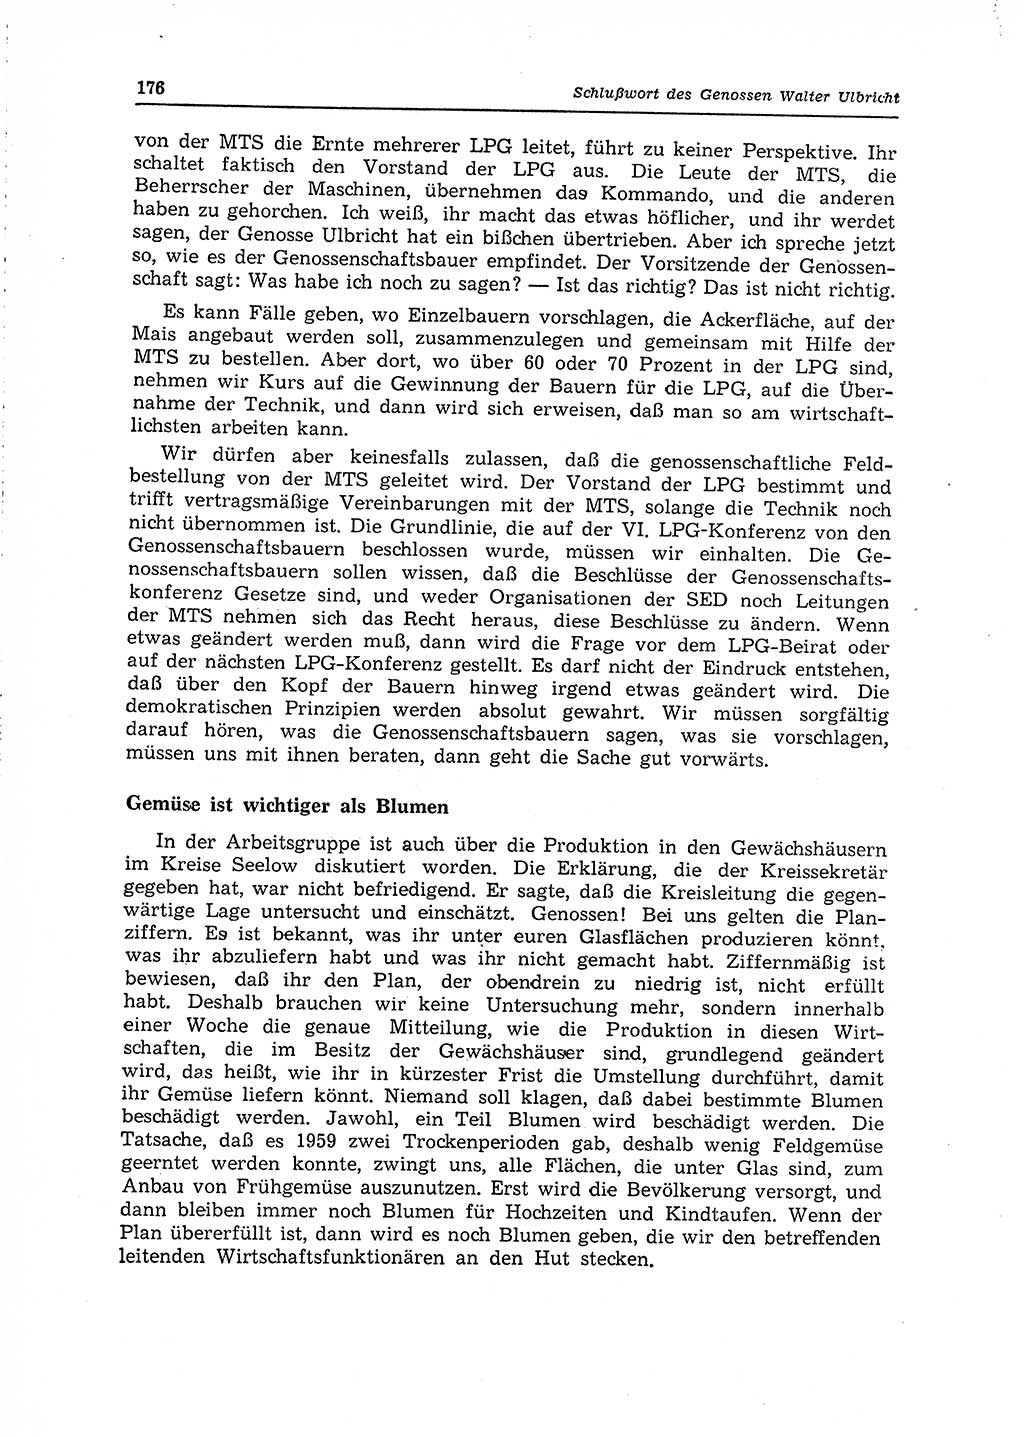 Neuer Weg (NW), Organ des Zentralkomitees (ZK) der SED (Sozialistische Einheitspartei Deutschlands) für Fragen des Parteilebens, 15. Jahrgang [Deutsche Demokratische Republik (DDR)] 1960, Seite 176 (NW ZK SED DDR 1960, S. 176)